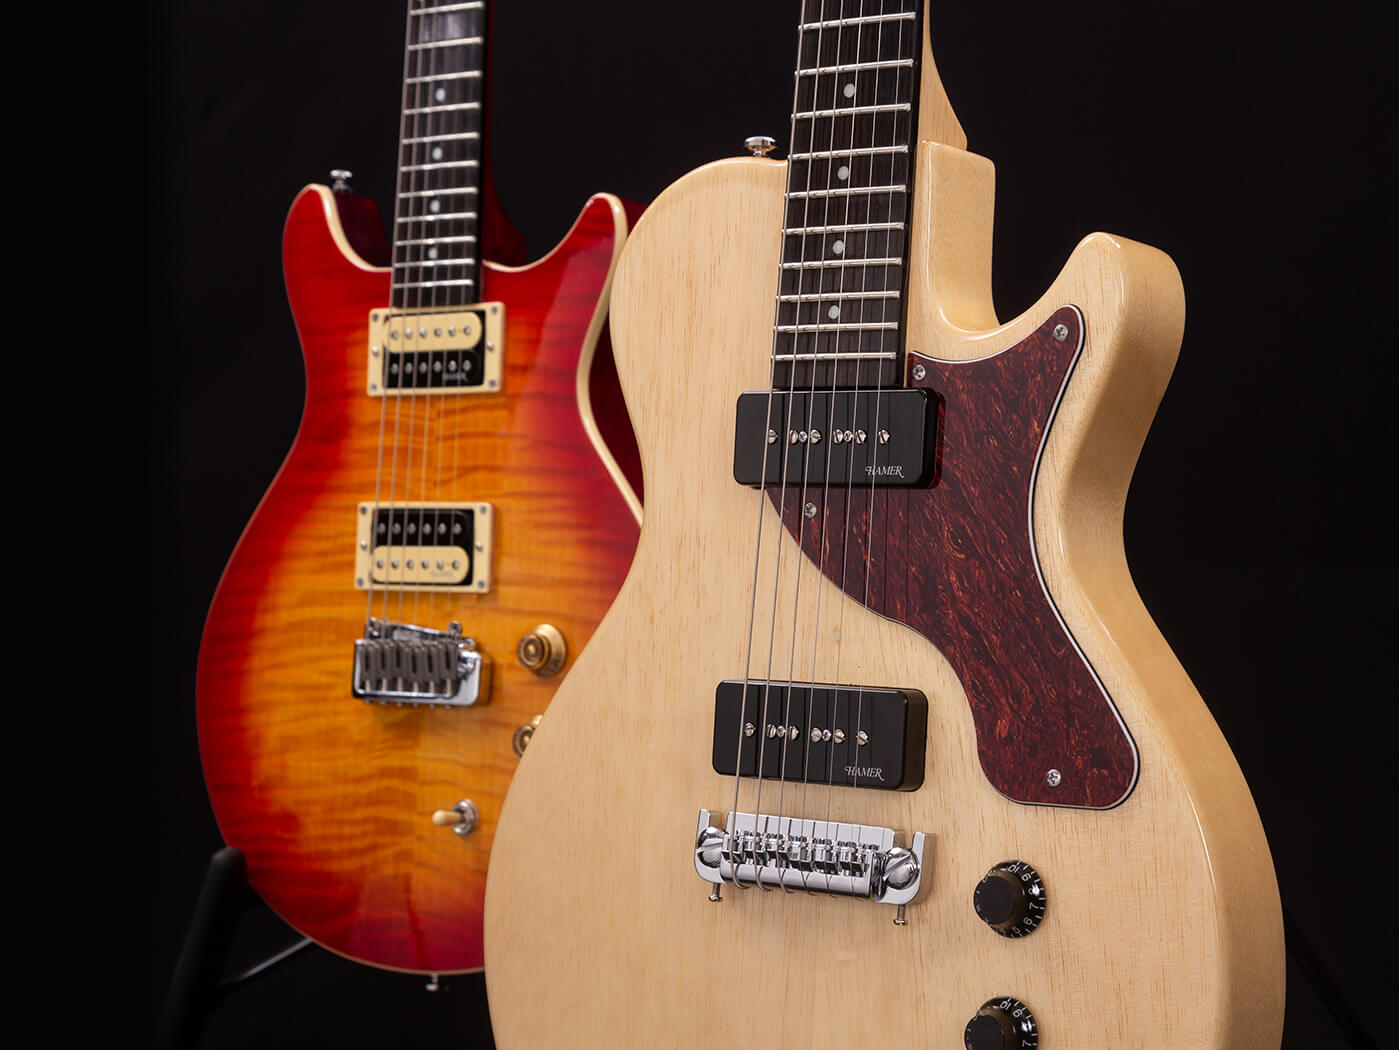 Hamer 2019 guitars